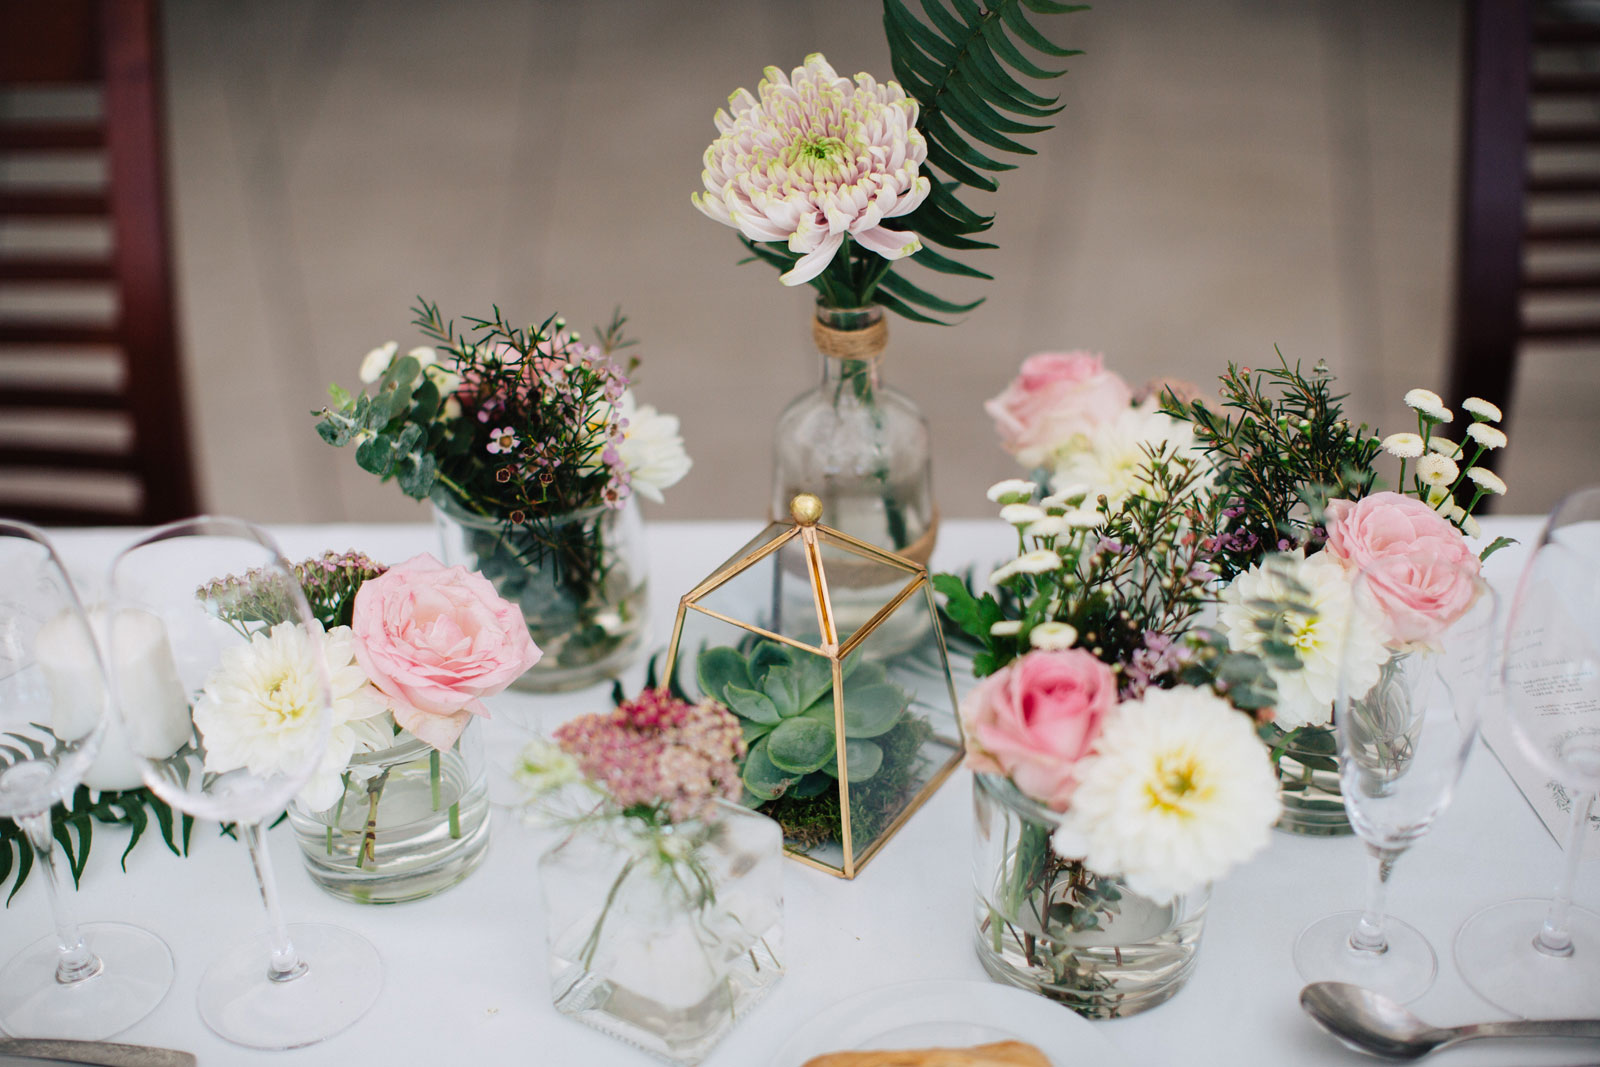 Centre de table de mariage champêtre chic lors d'une réception au Cap Ferret décorée par Elisabeth Delsol.